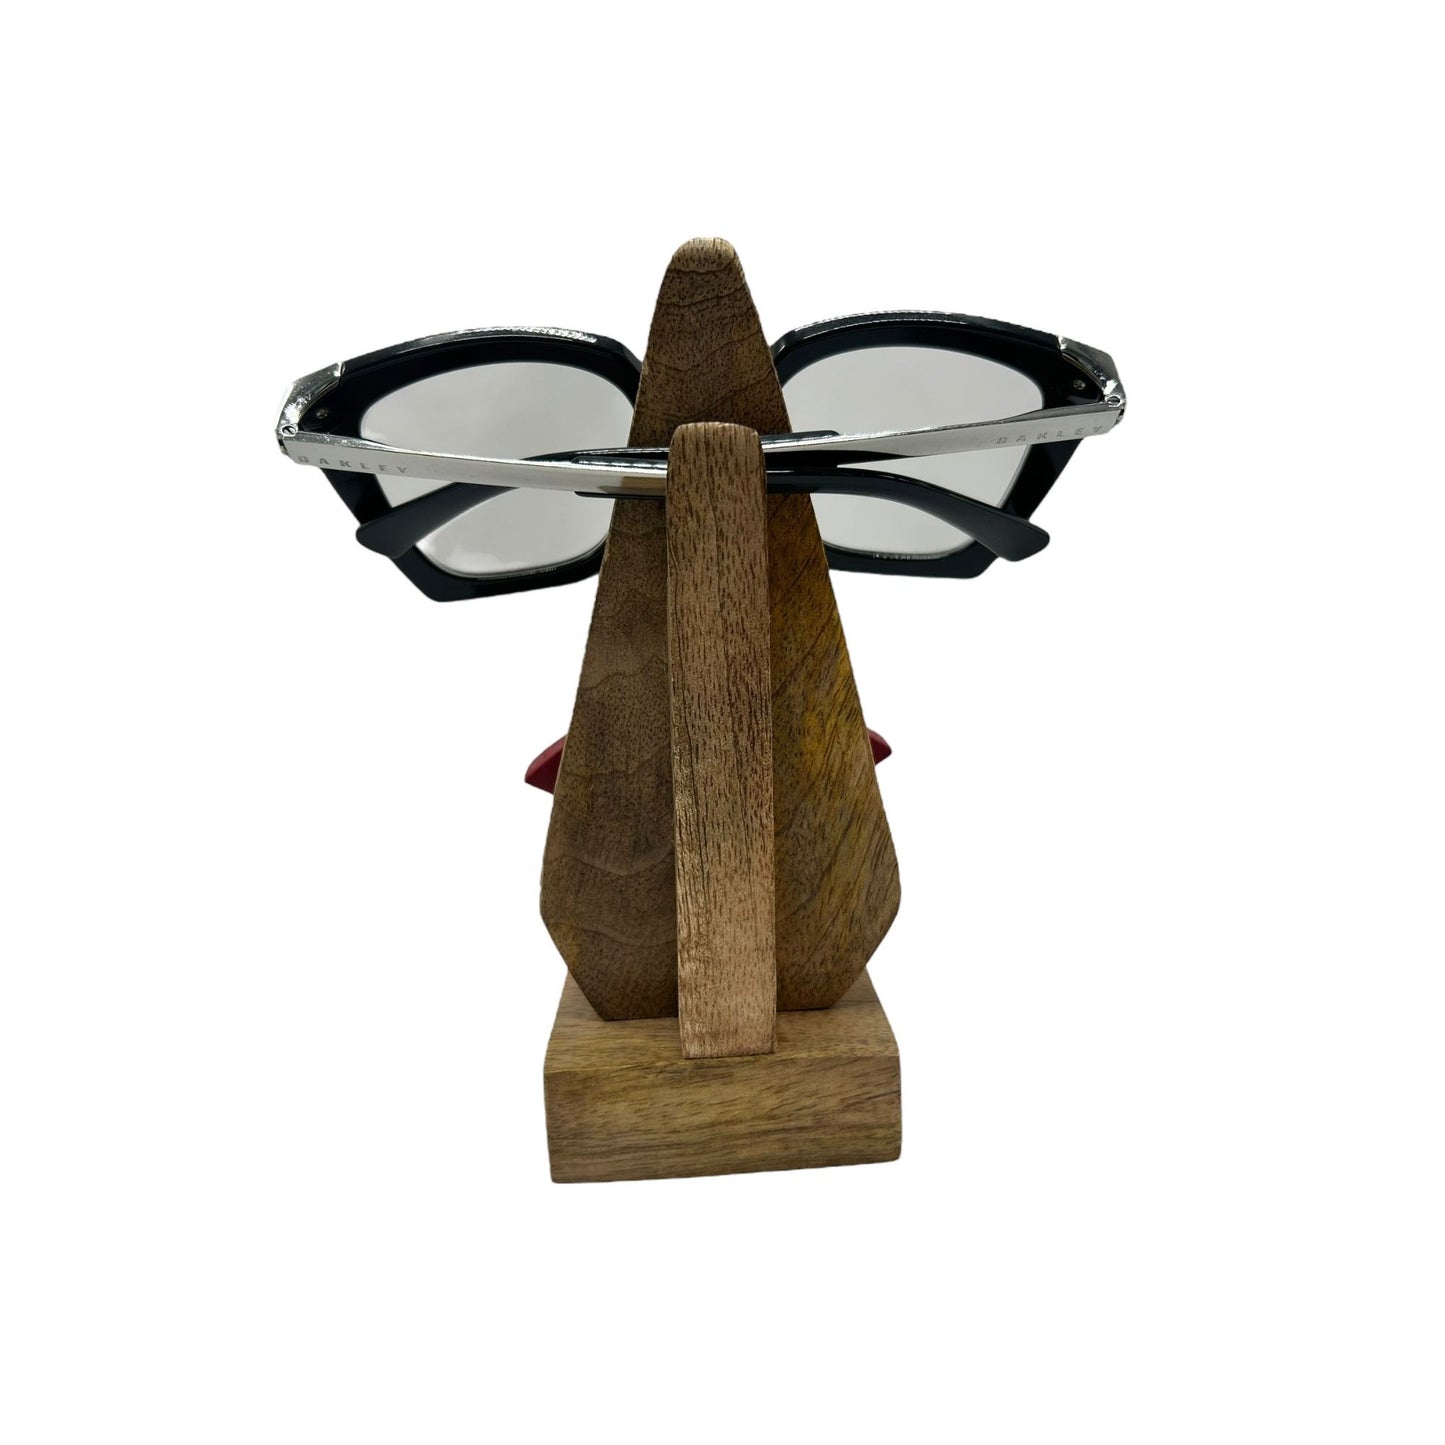 Oakley Sideswept Women's Square Sunglasses OO94450251 Black Cat Eye Frame 100%UV